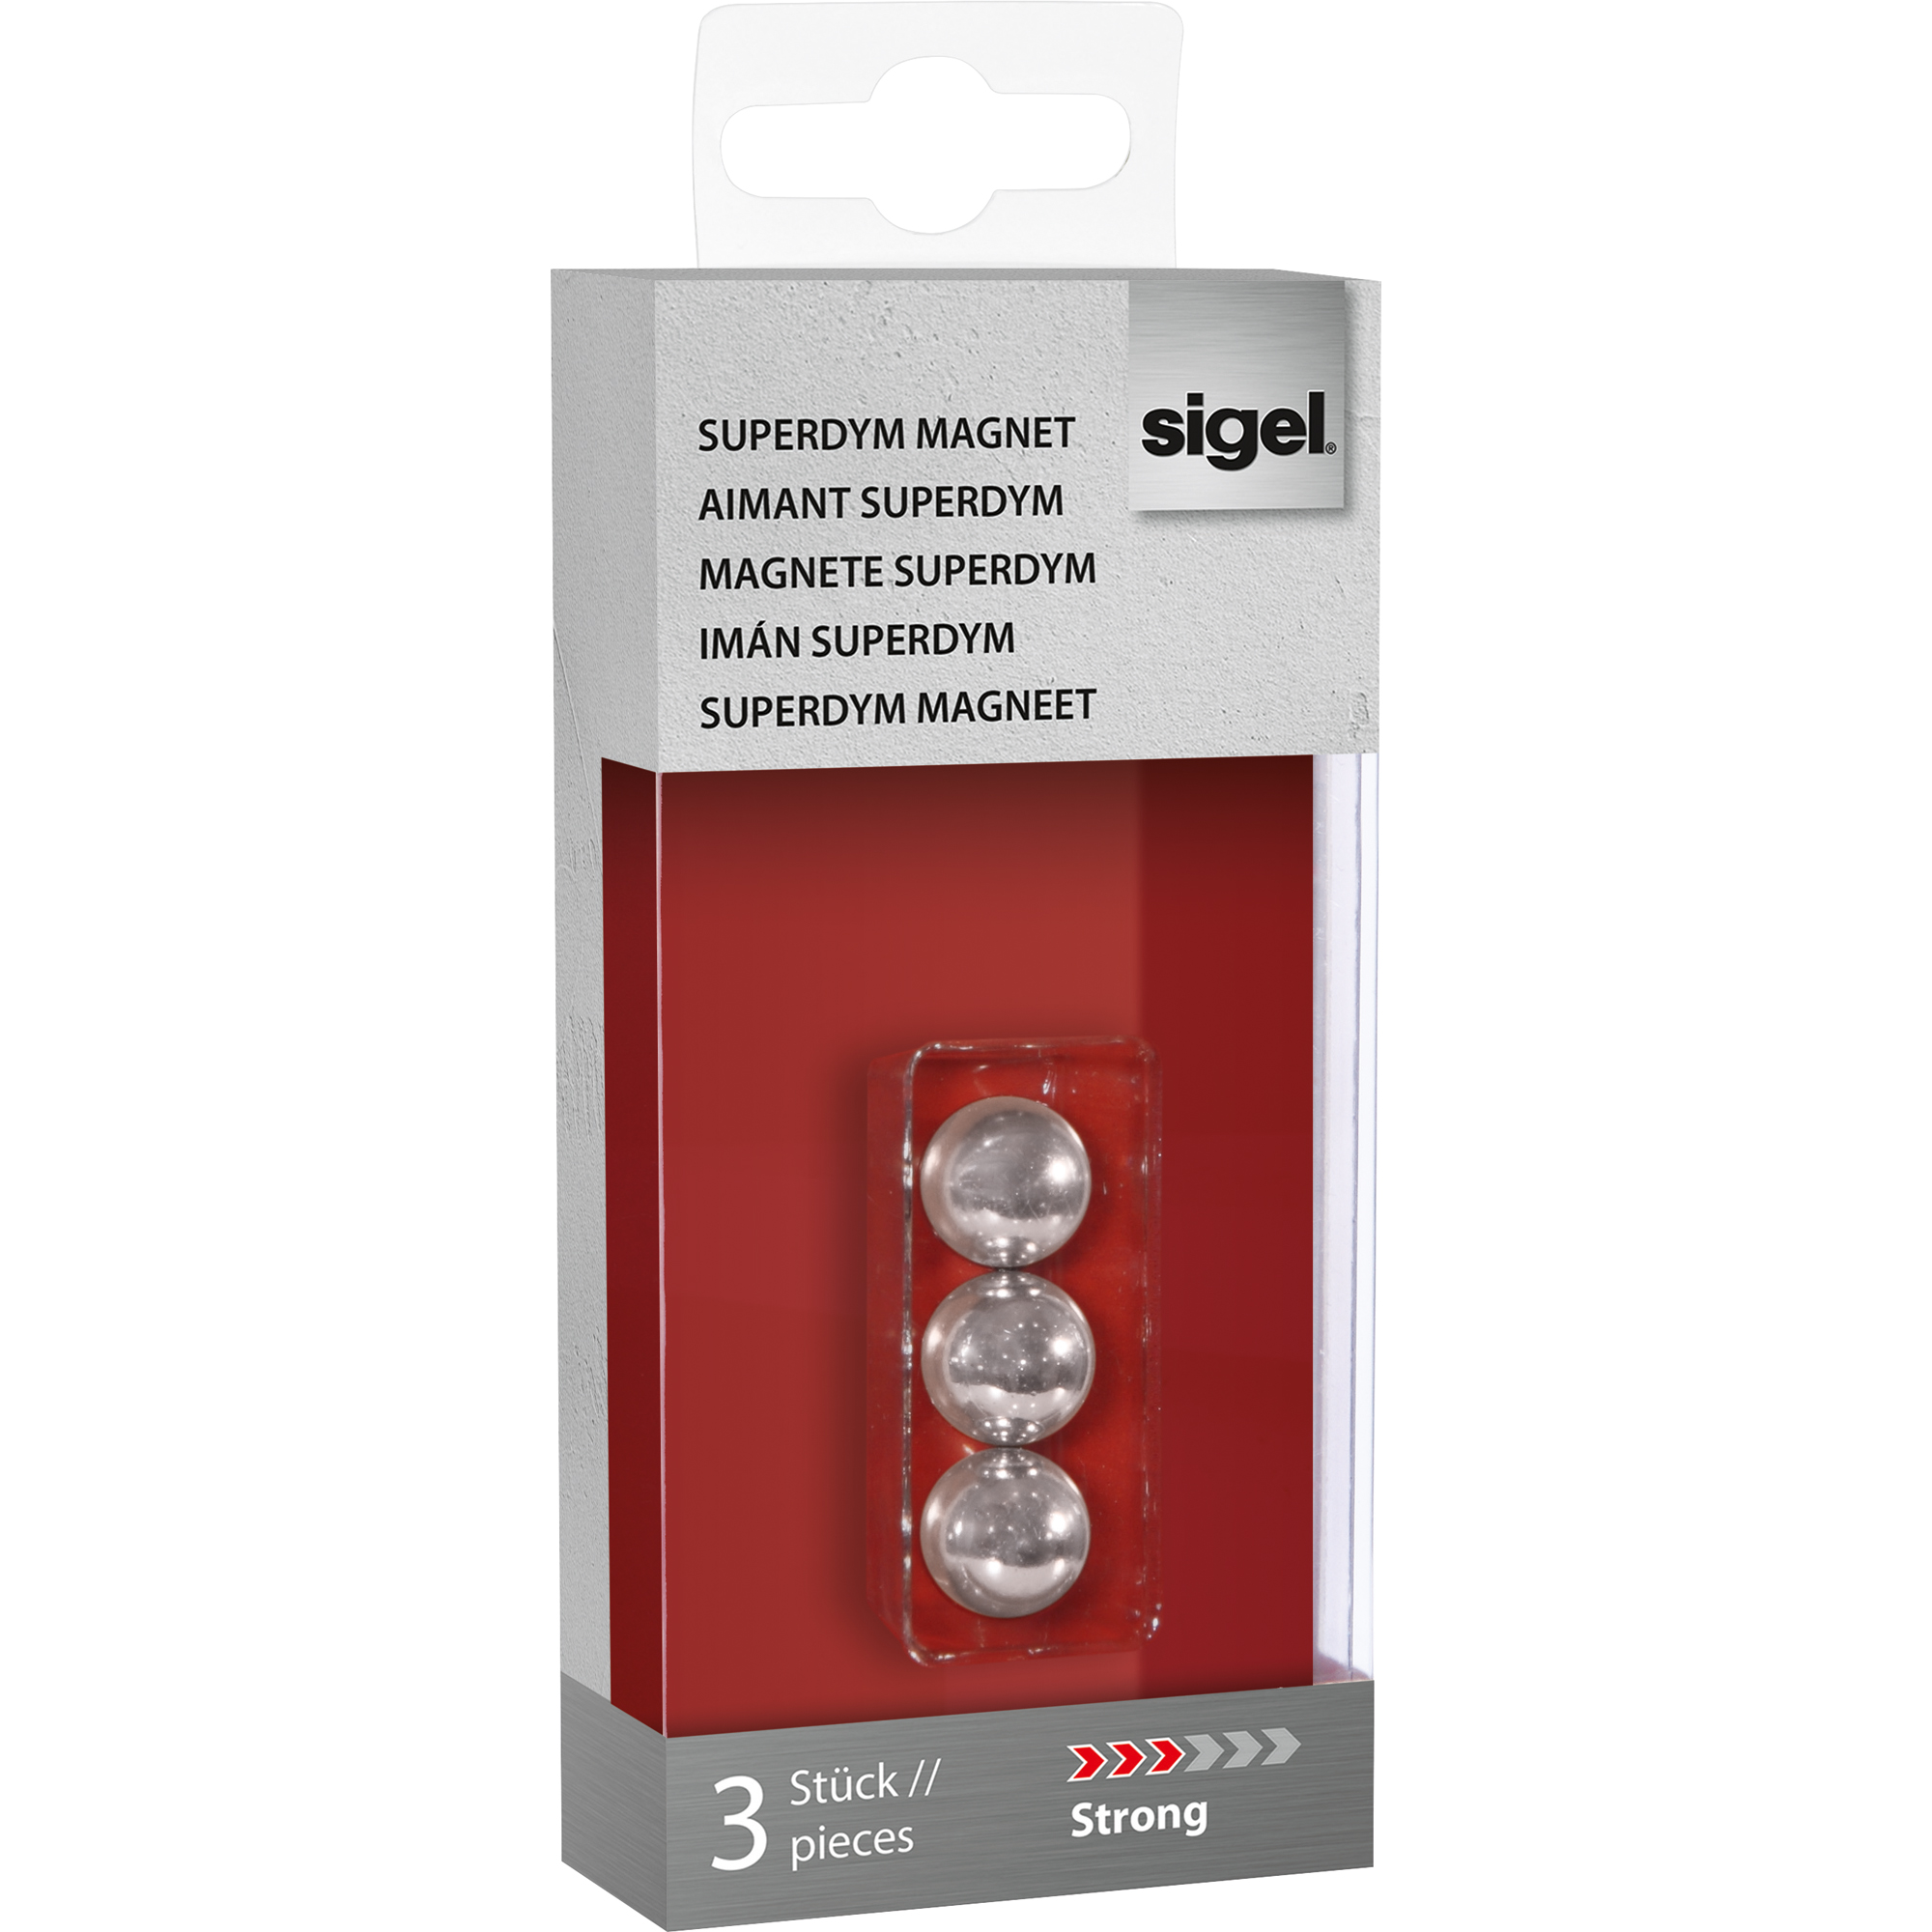 SIGEL Magnet SuperDym C5 Strong Kugel